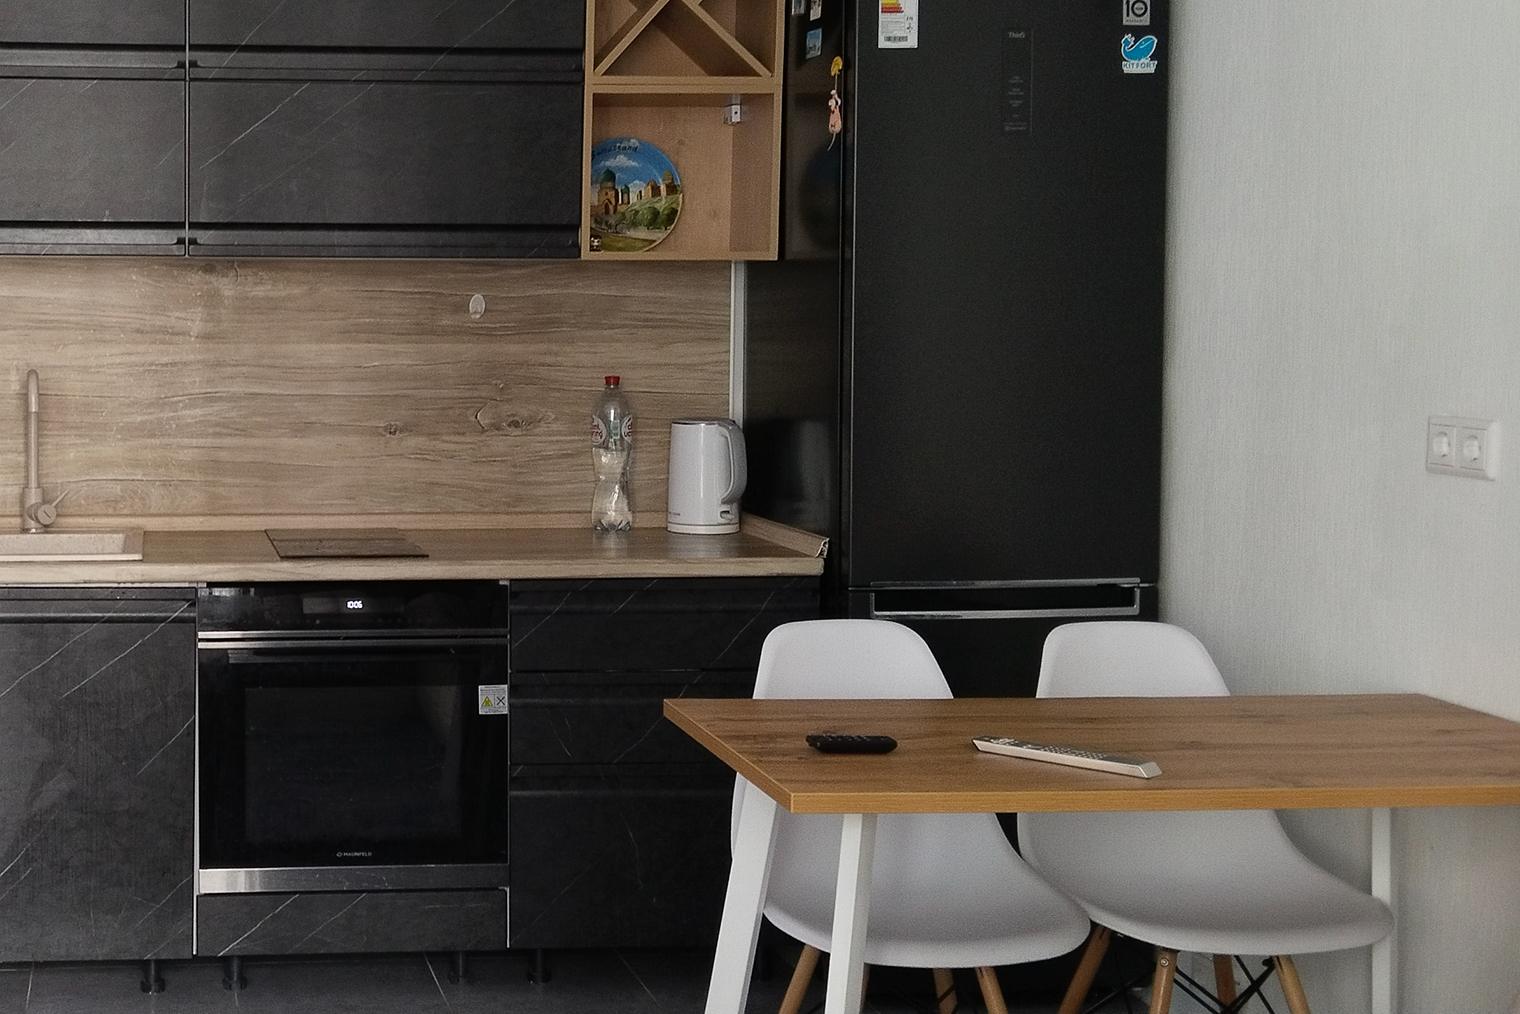 Размеры кухонного стола — 115 × 60 × 75 см